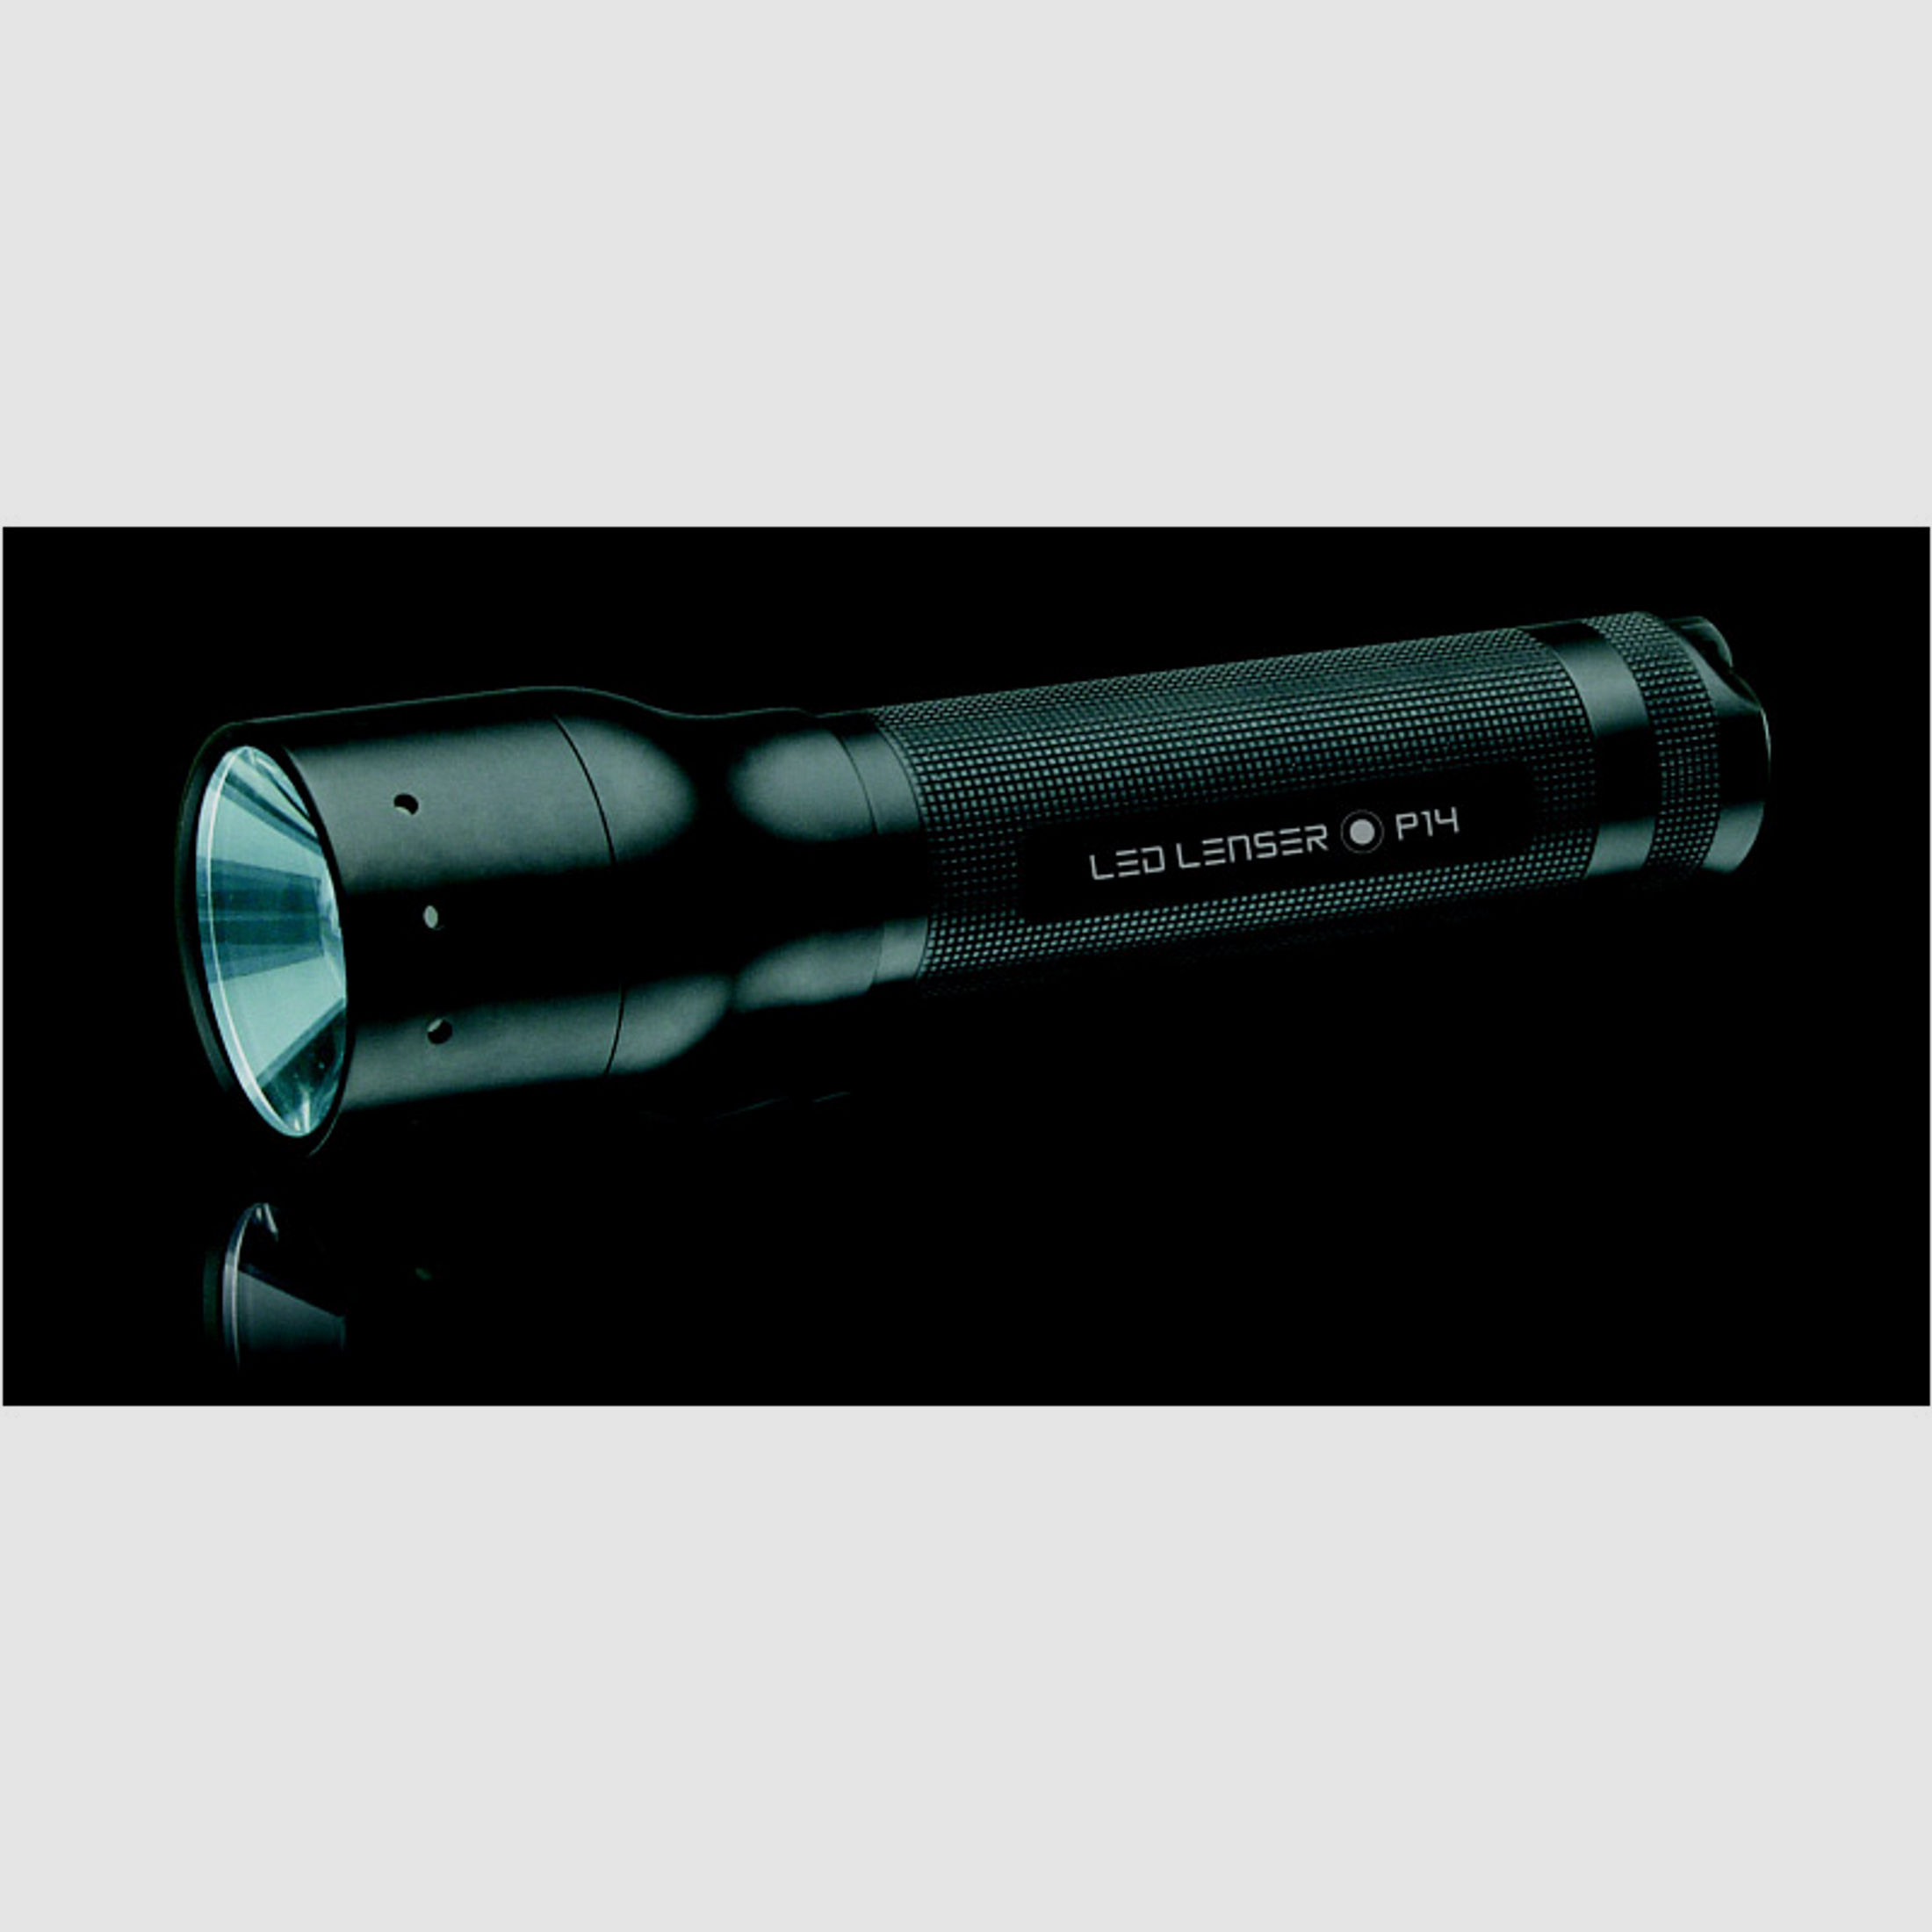 LED Taschenlampe Lenser P14